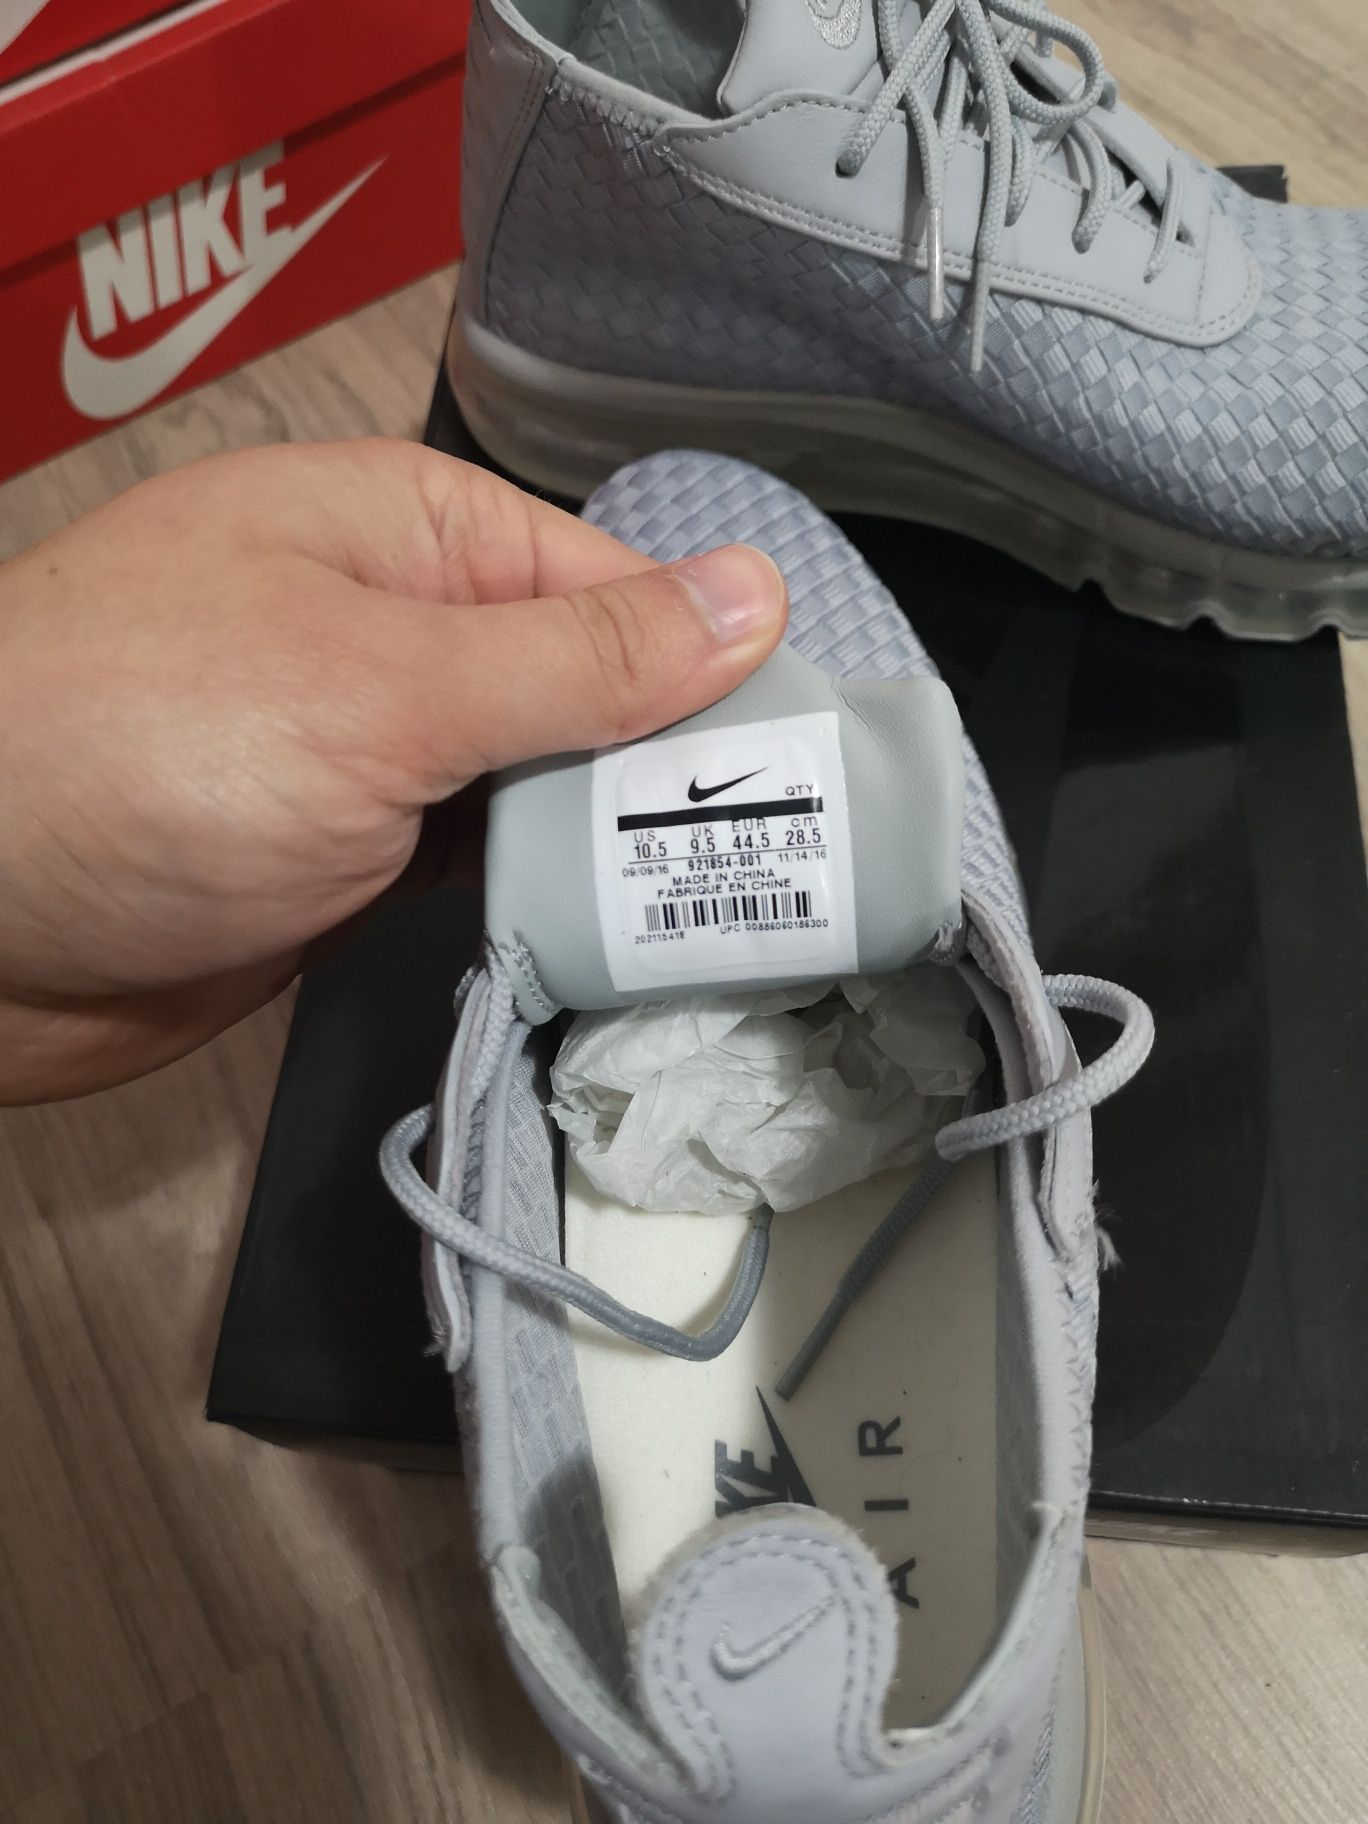 Nike Air Max Woven Boot / Номер 44.5, 45 / Оригинални